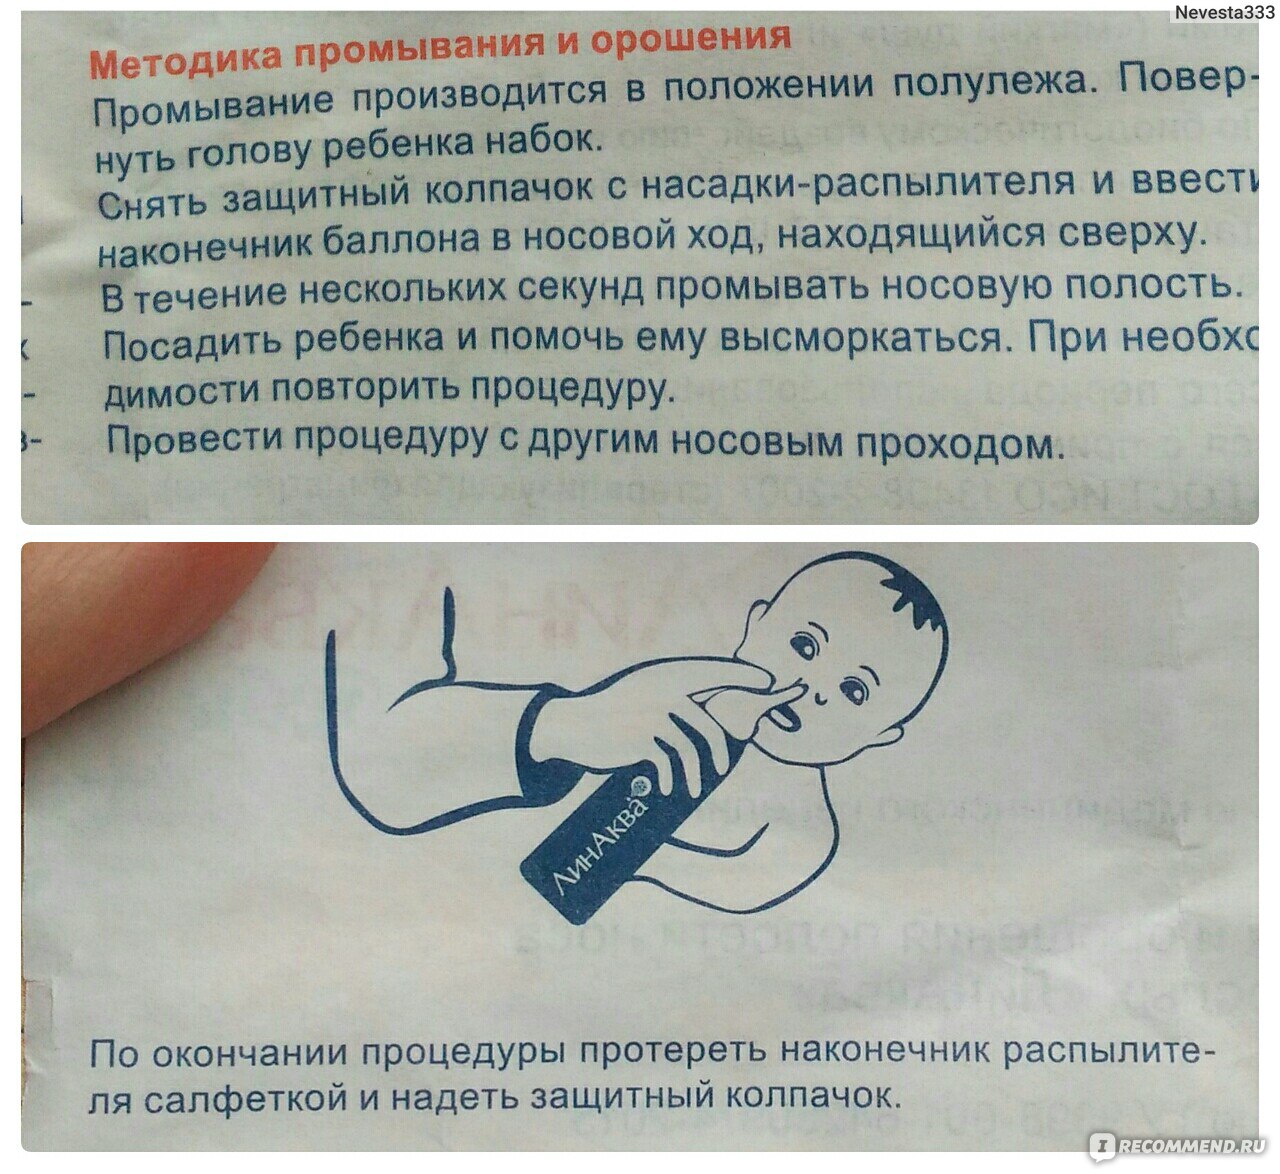 Физраствор малышу. Как промывать нос. Промывание носа у грудничка аквалором. Как правильно промывать нос ребенку. Как правильно промывать нос ребёнку 2 года.